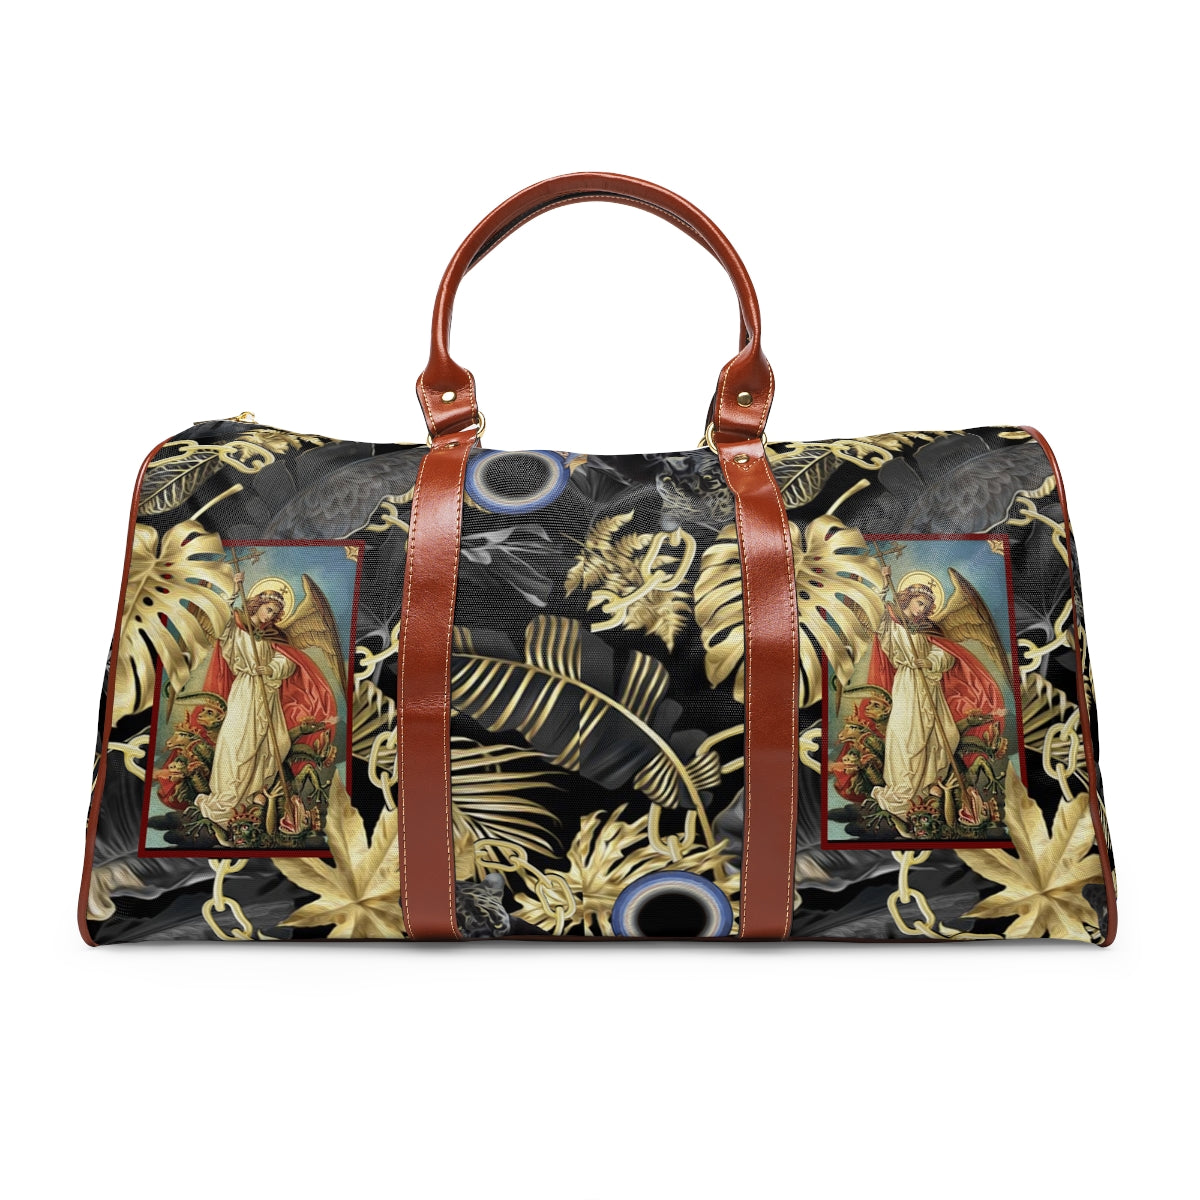 This Laviticus travel bag